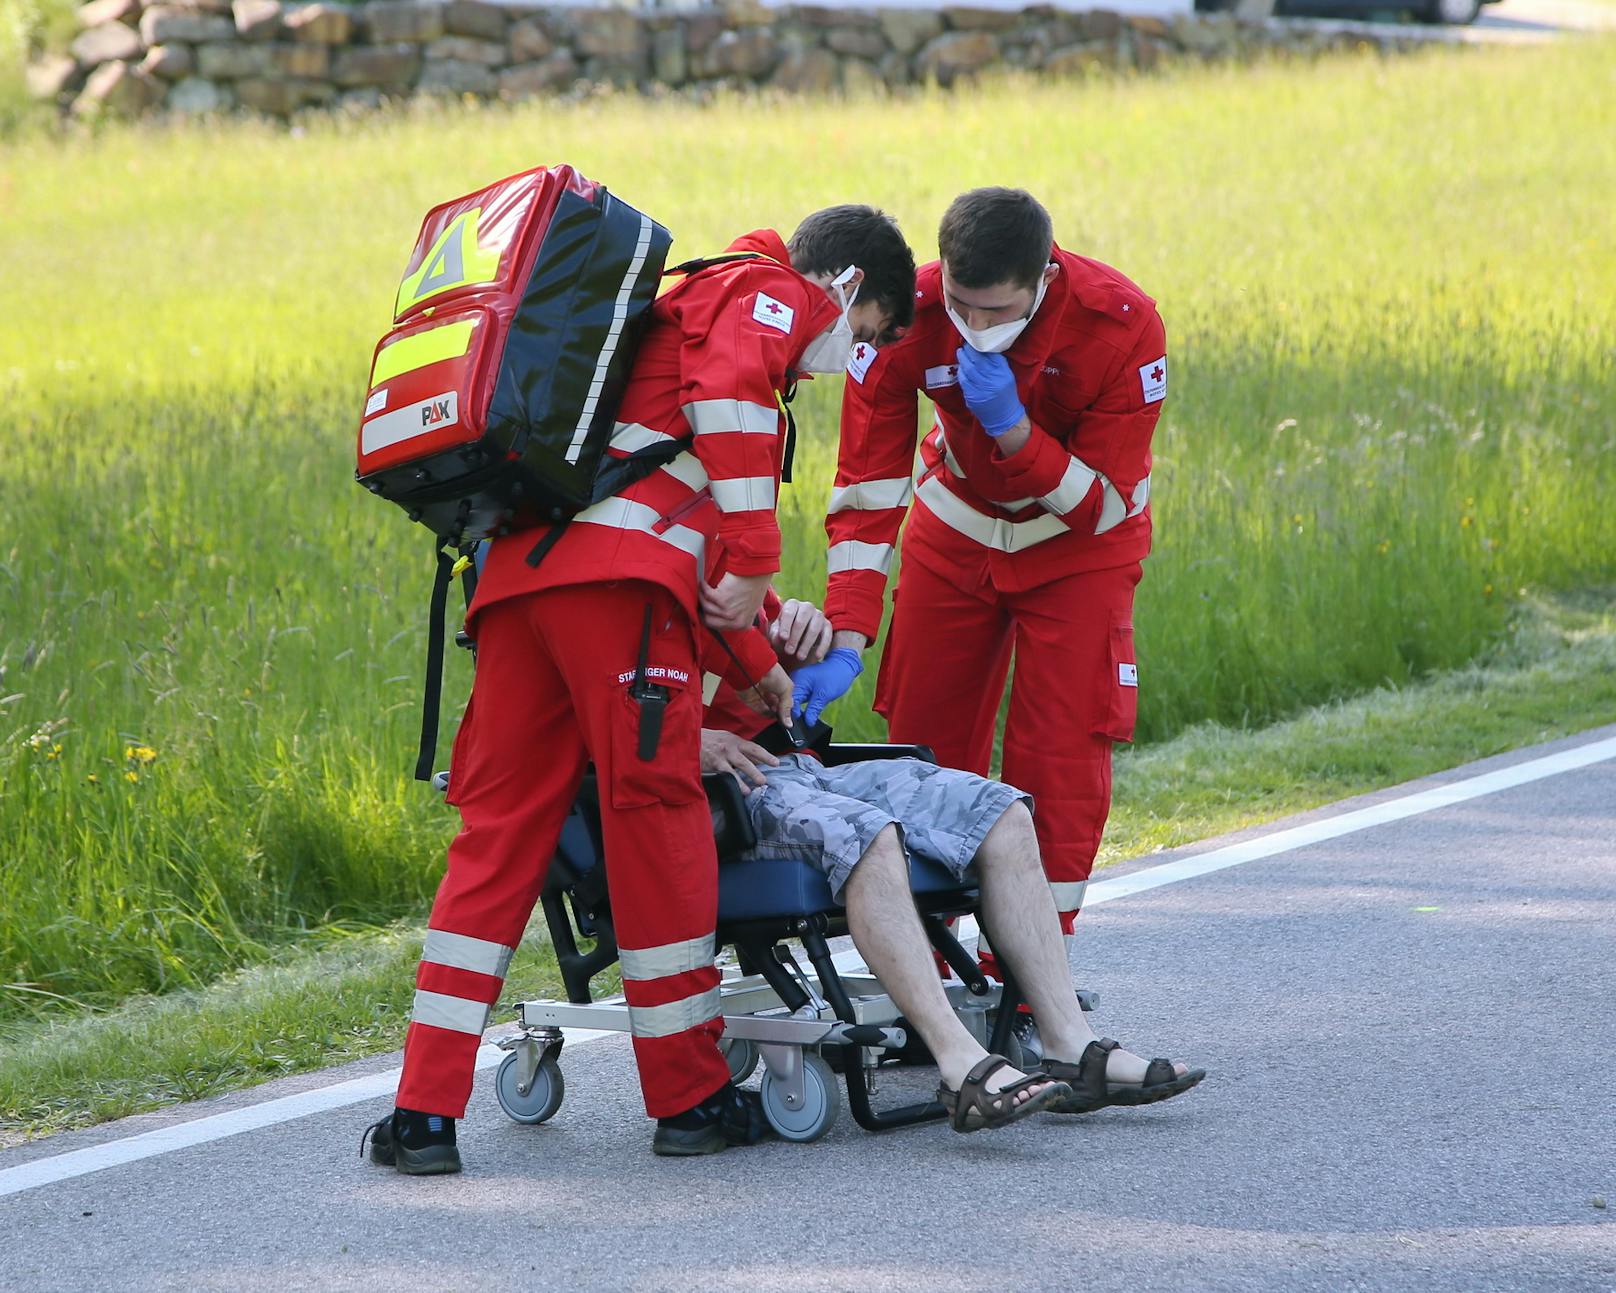 Sanitäter versorgen den verletzten Pkw-Fahrer.